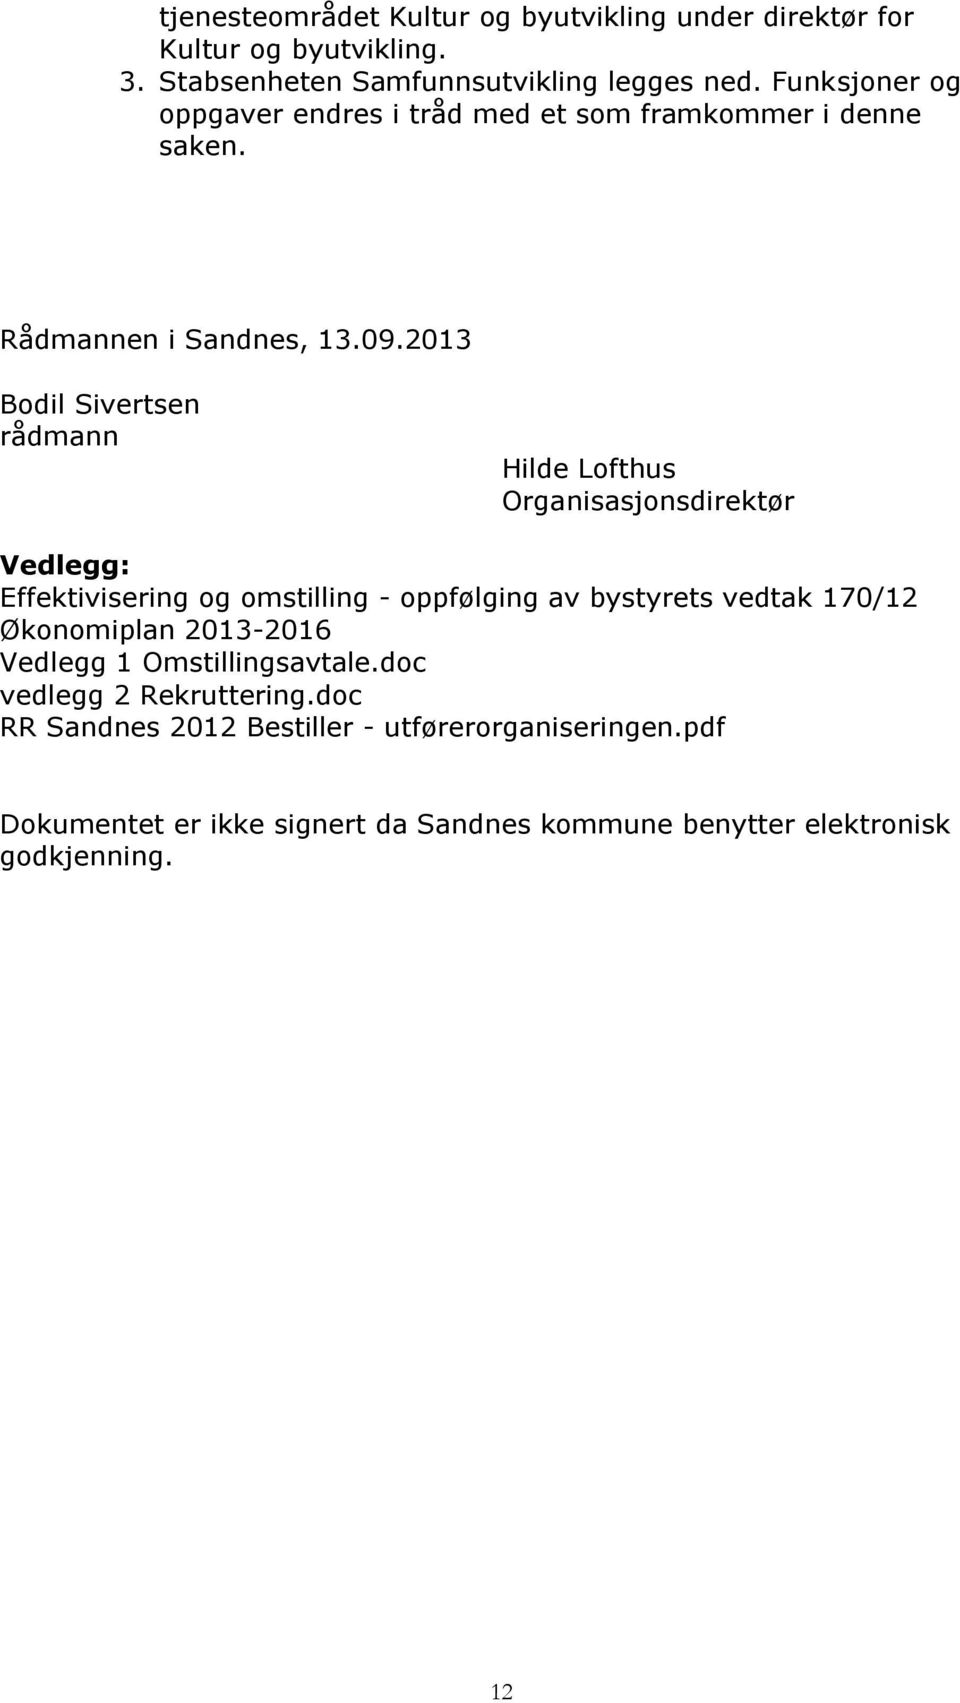 2013 Bodil Sivertsen rådmann Hilde Lofthus Organisasjonsdirektør Vedlegg: Effektivisering og omstilling - oppfølging av bystyrets vedtak 170/12